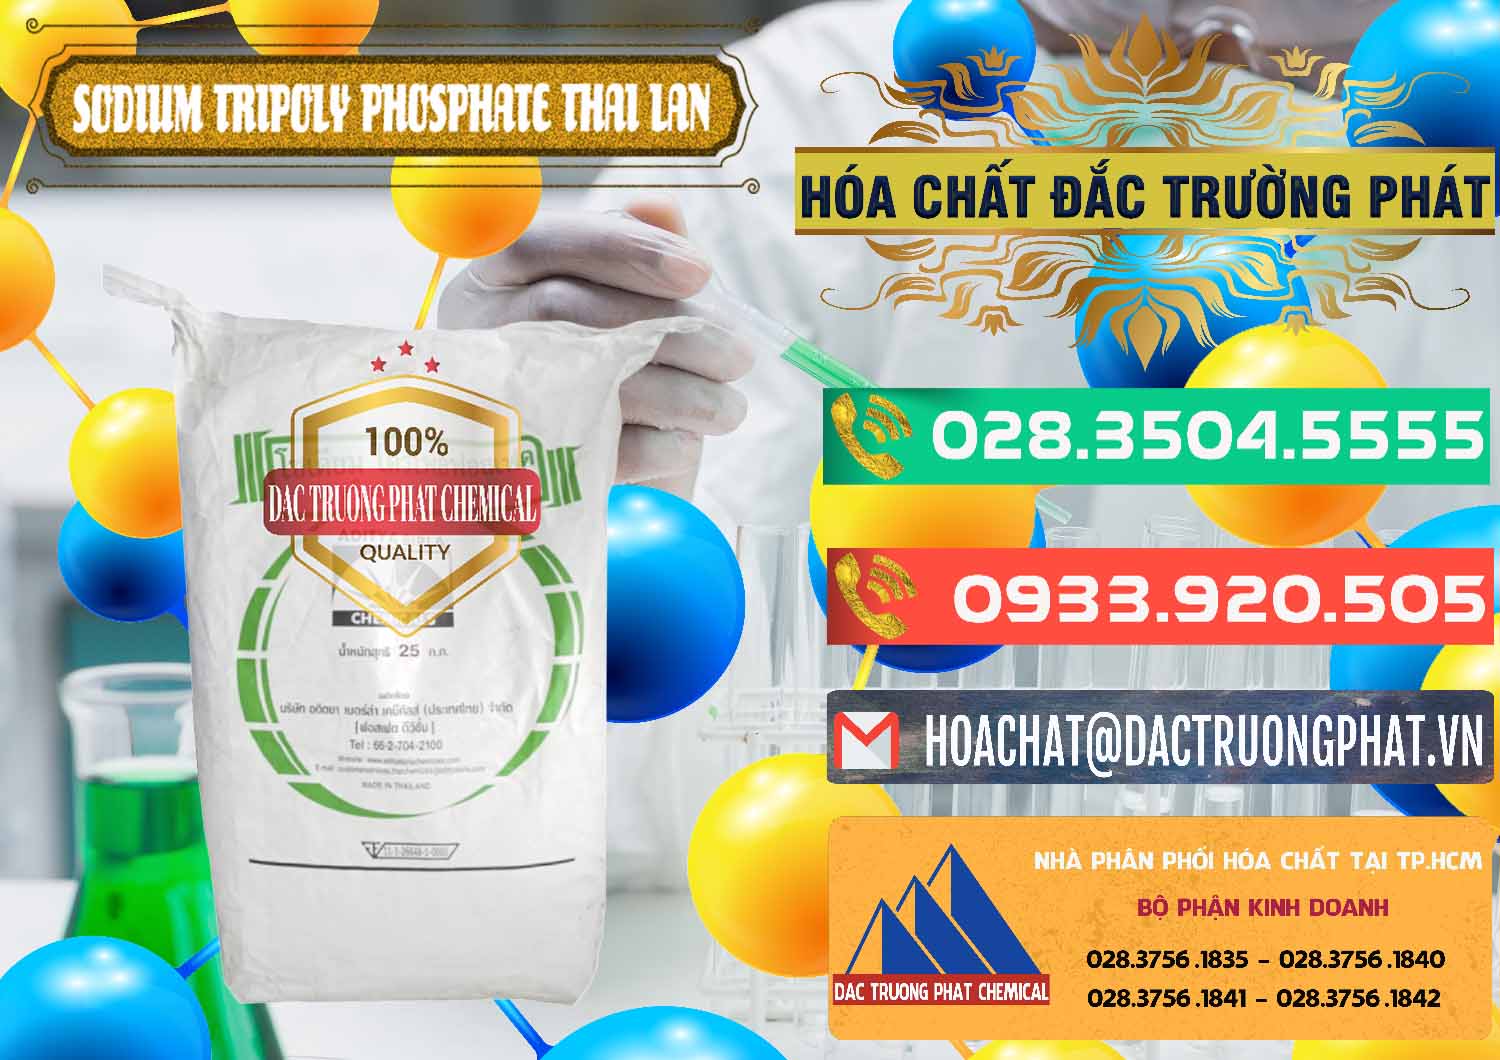 Nơi bán _ phân phối Sodium Tripoly Phosphate - STPP Aditya Birla Grasim Thái Lan Thailand - 0421 - Cty kinh doanh & phân phối hóa chất tại TP.HCM - congtyhoachat.com.vn